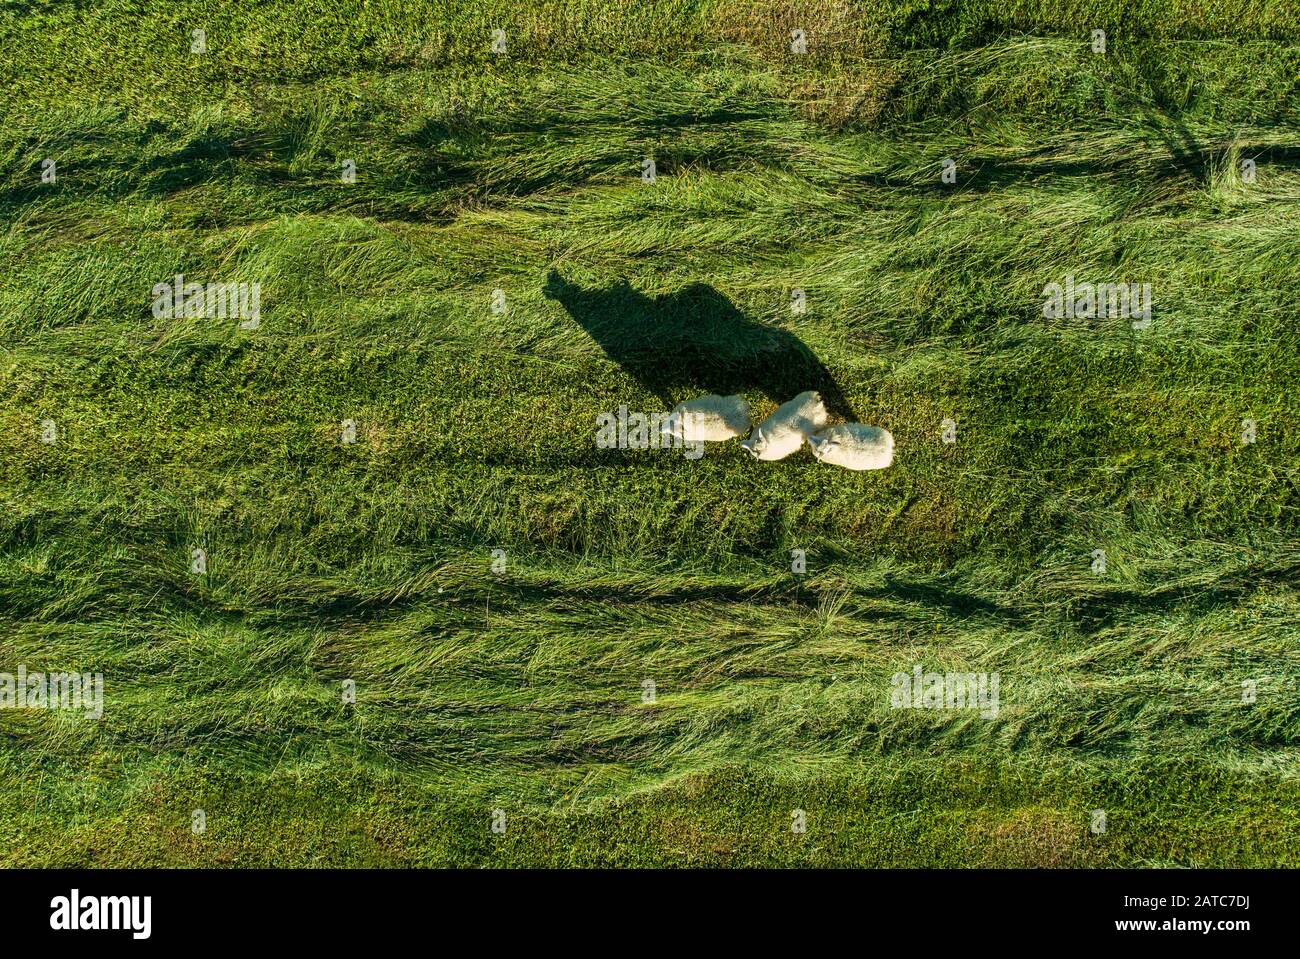 Schafe durchstreifen ein grünes Rasenfeld Stockfoto